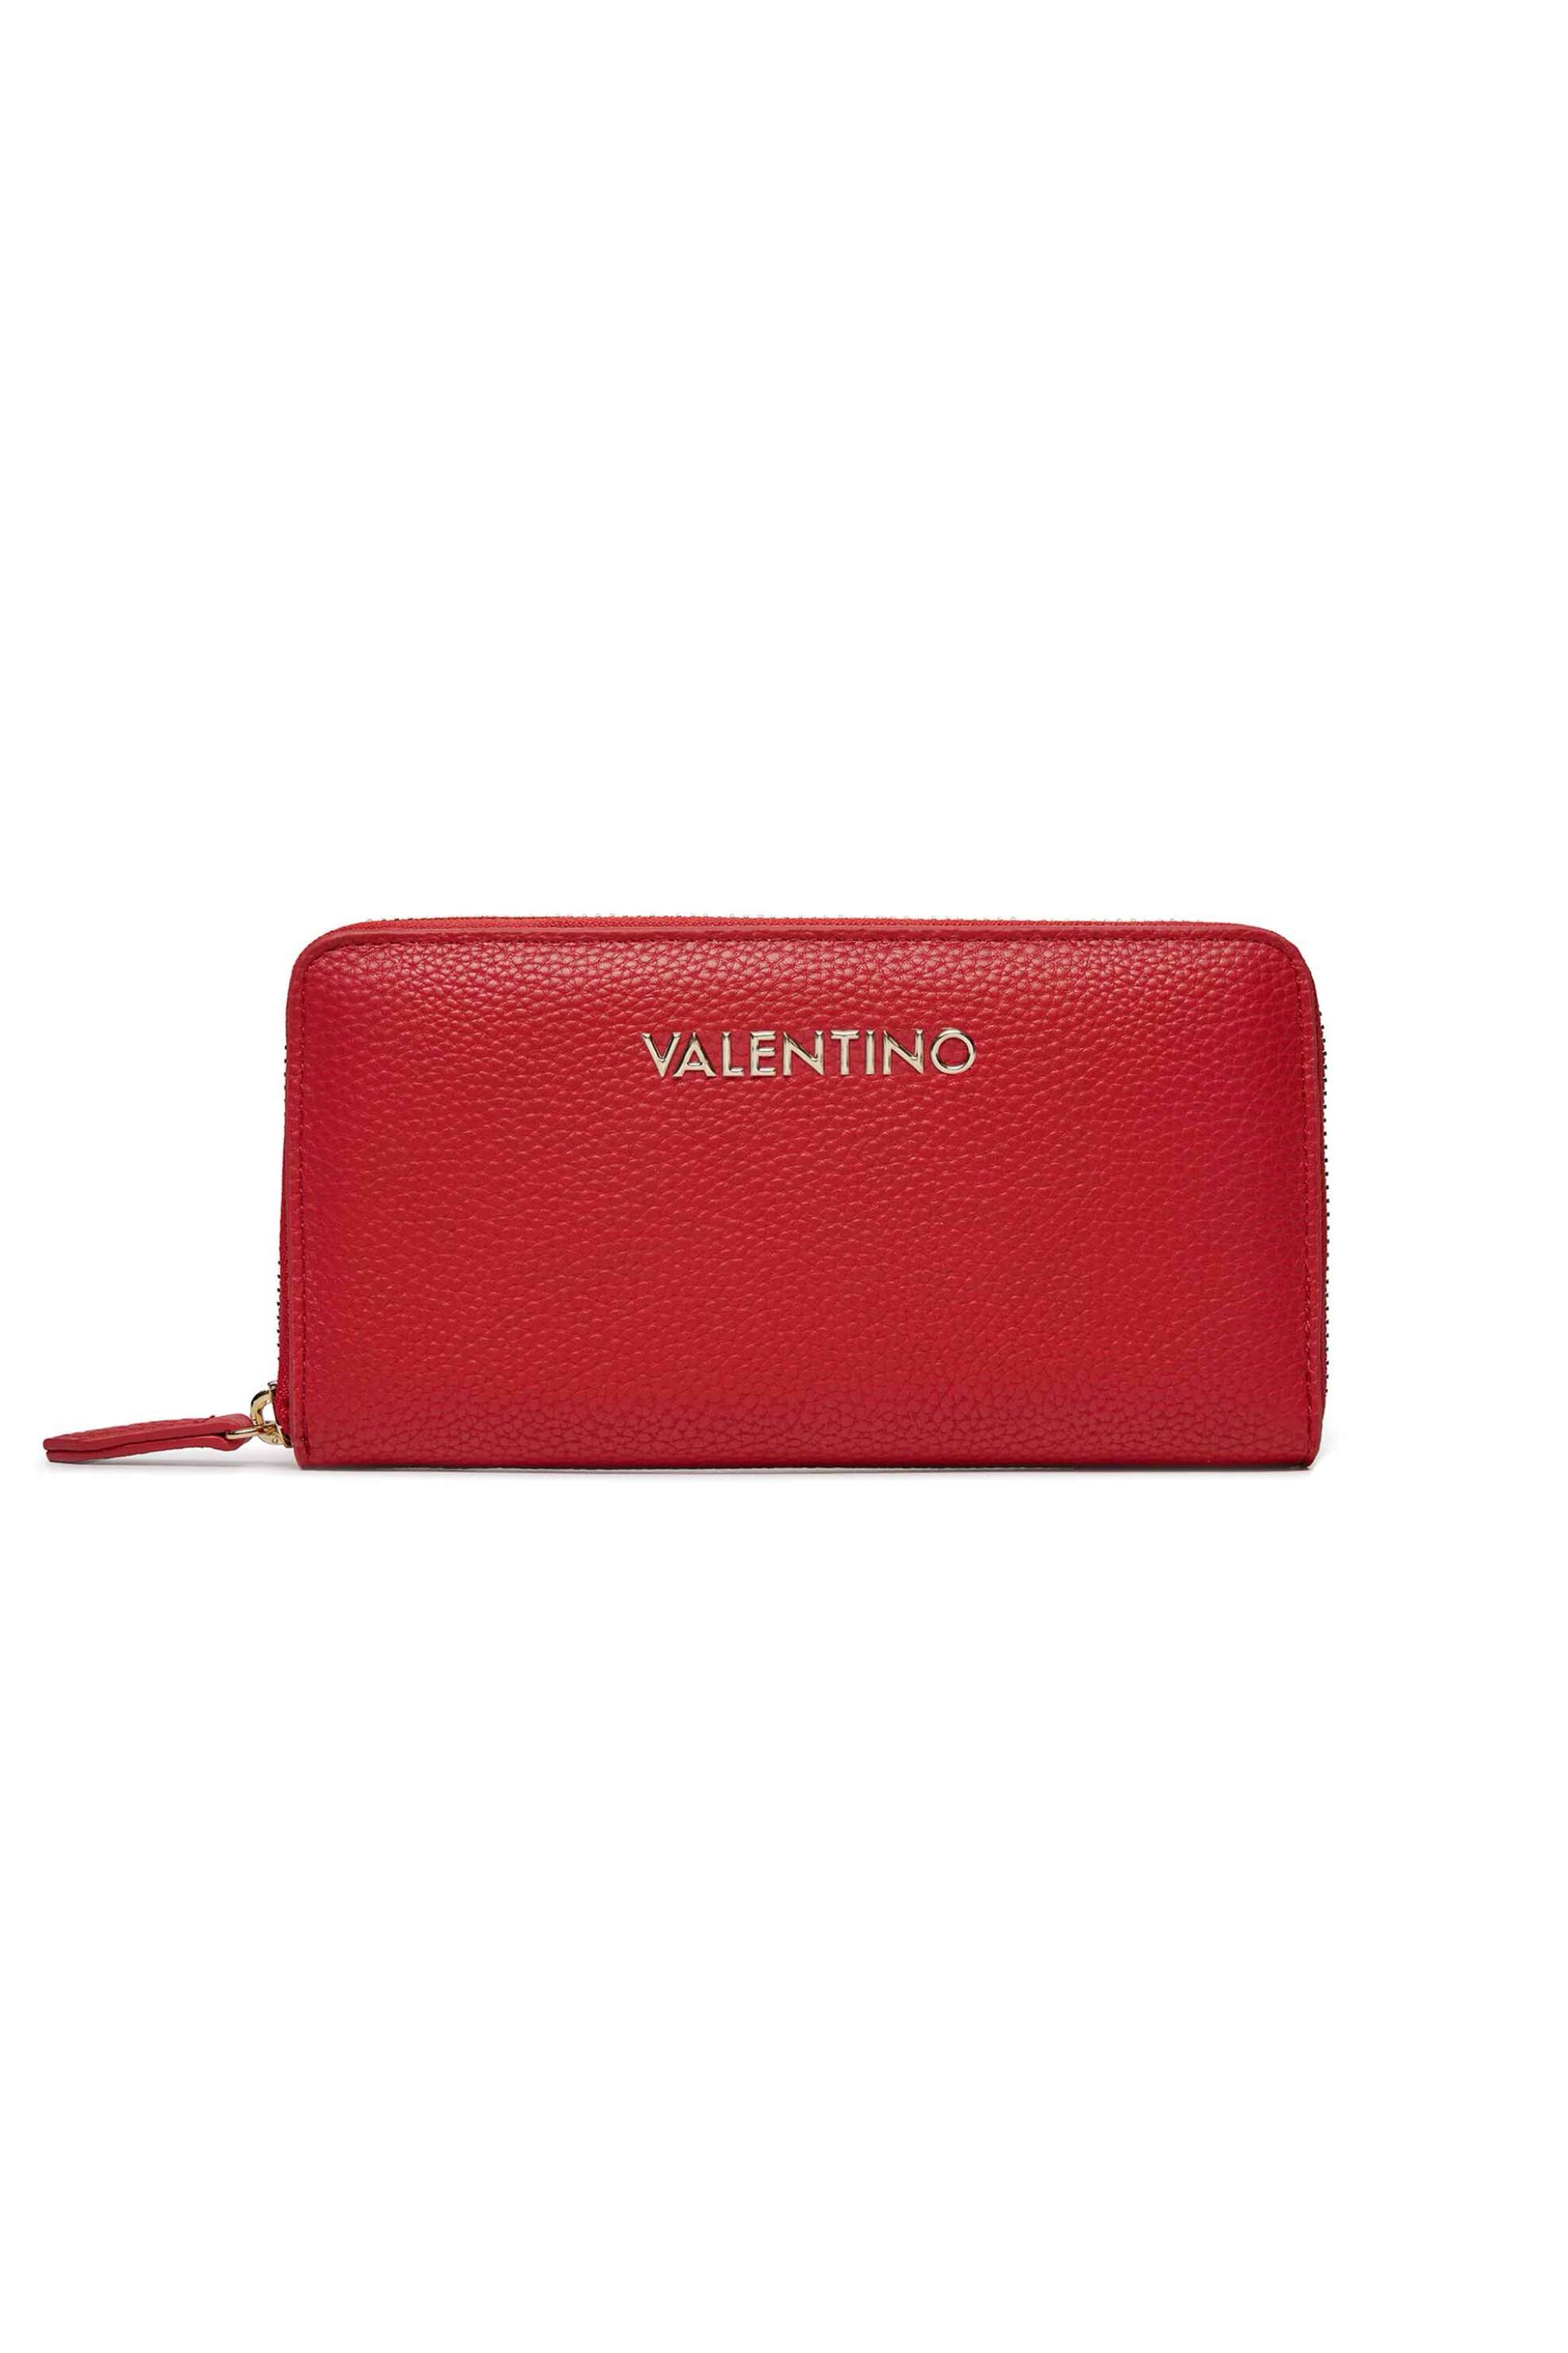 Γυναίκα > ΑΞΕΣΟΥΑΡ > Πορτοφόλια & Θήκες Valentino γυναικείο πορτοφόλι μονόχρωμο με ανάγλυφο logo "Brixton" - 55KVPS7LX155/BR Κόκκινο